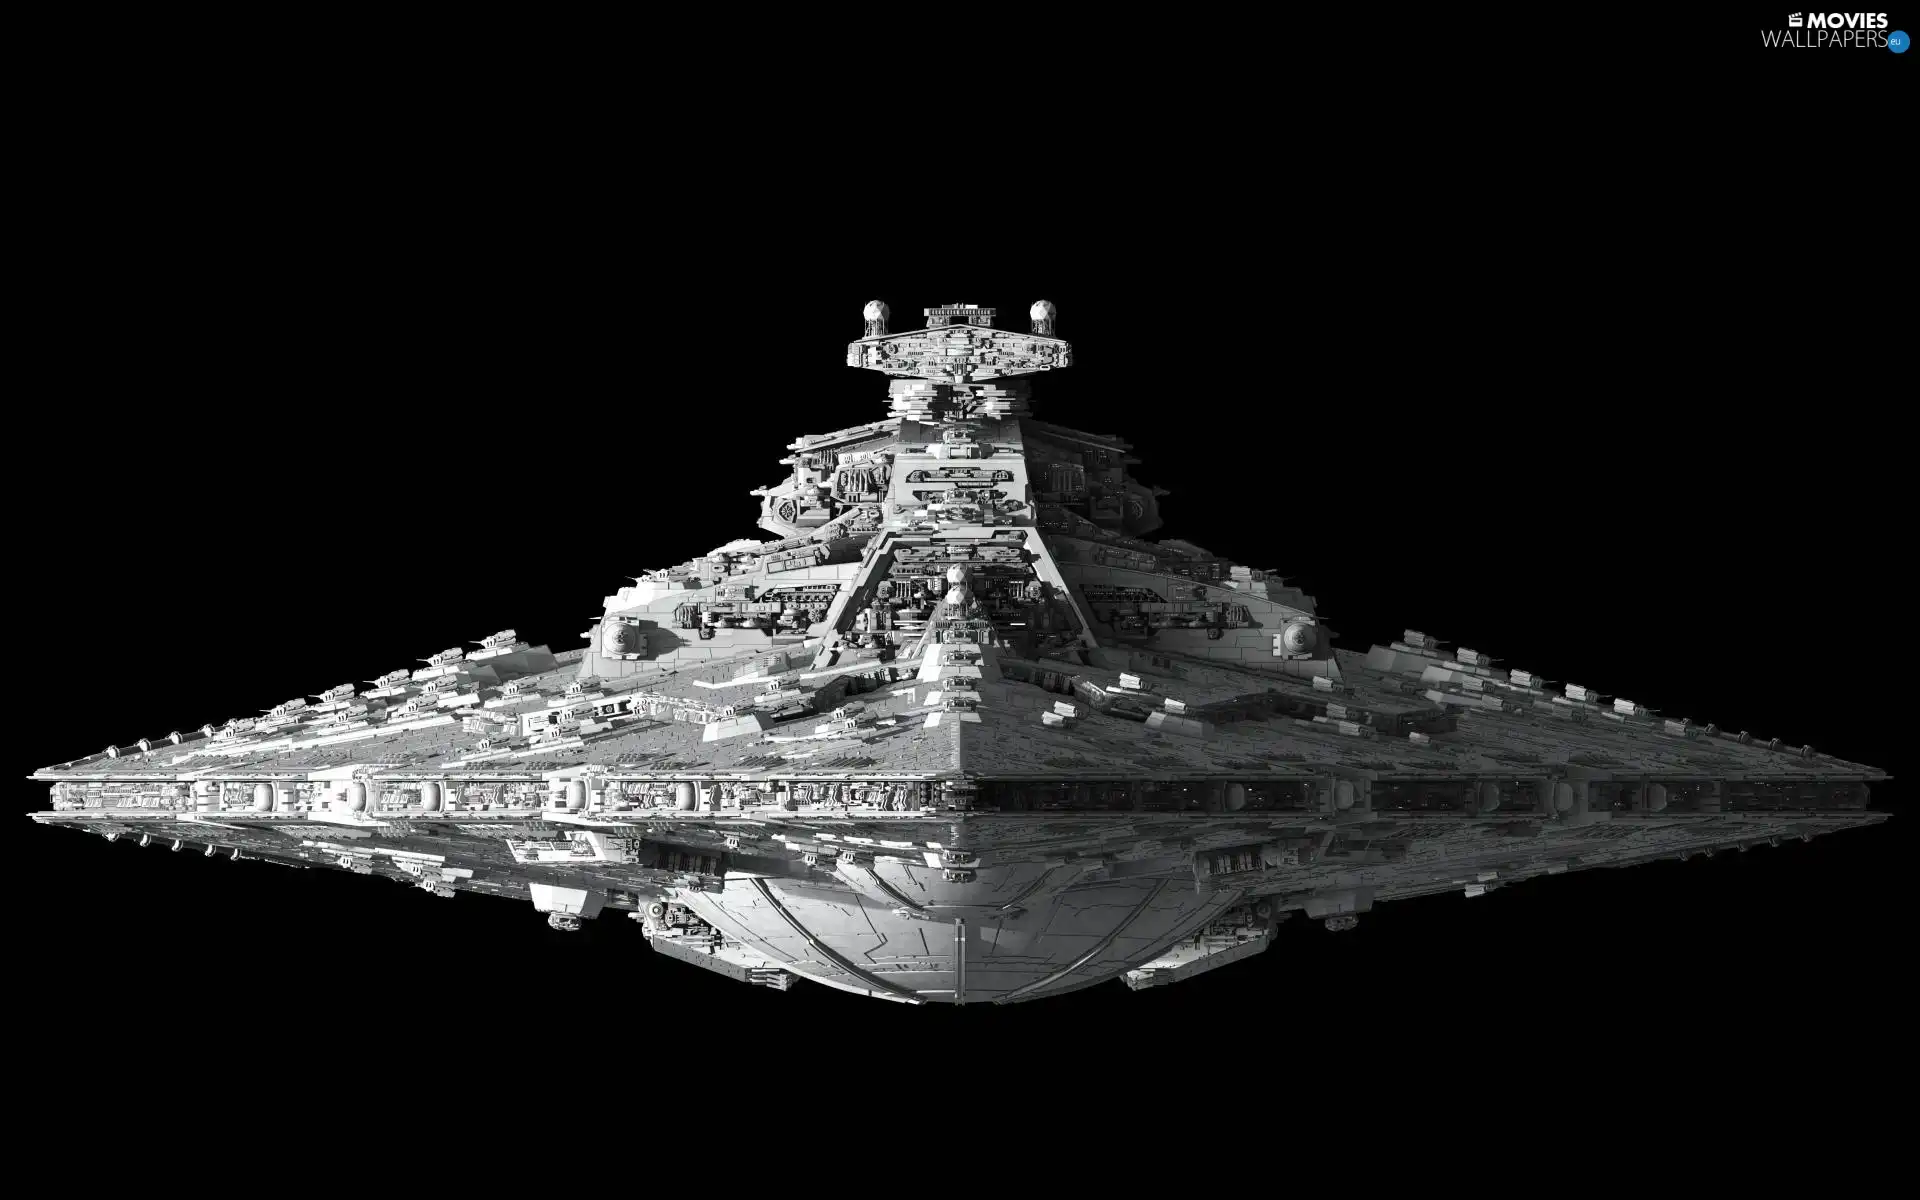 Star wars, The ship fleet